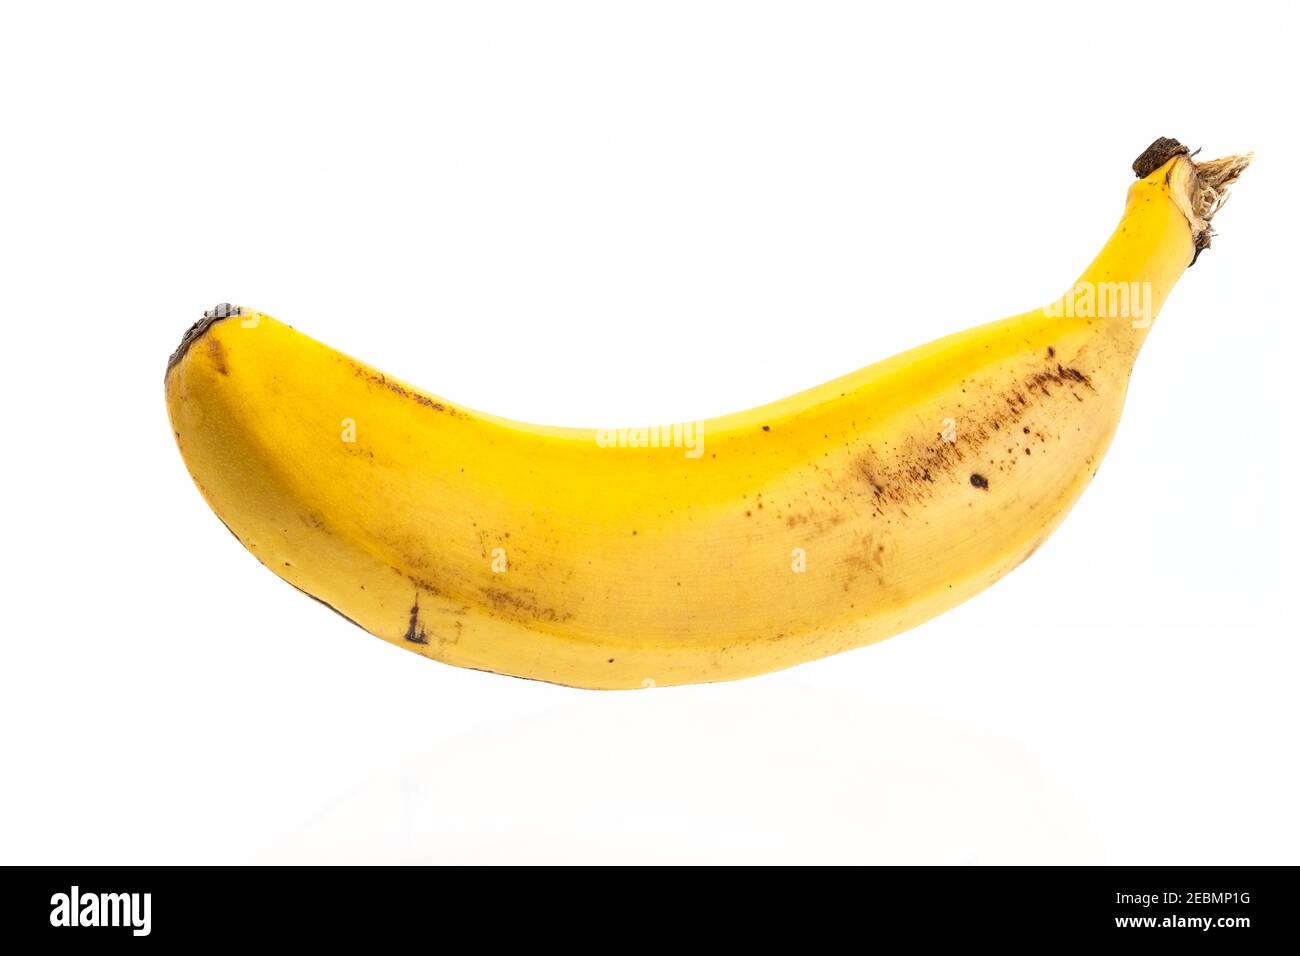 Eine einzige Bananenart platano de Canarias isoliert auf weiß Hintergrund Stockfoto